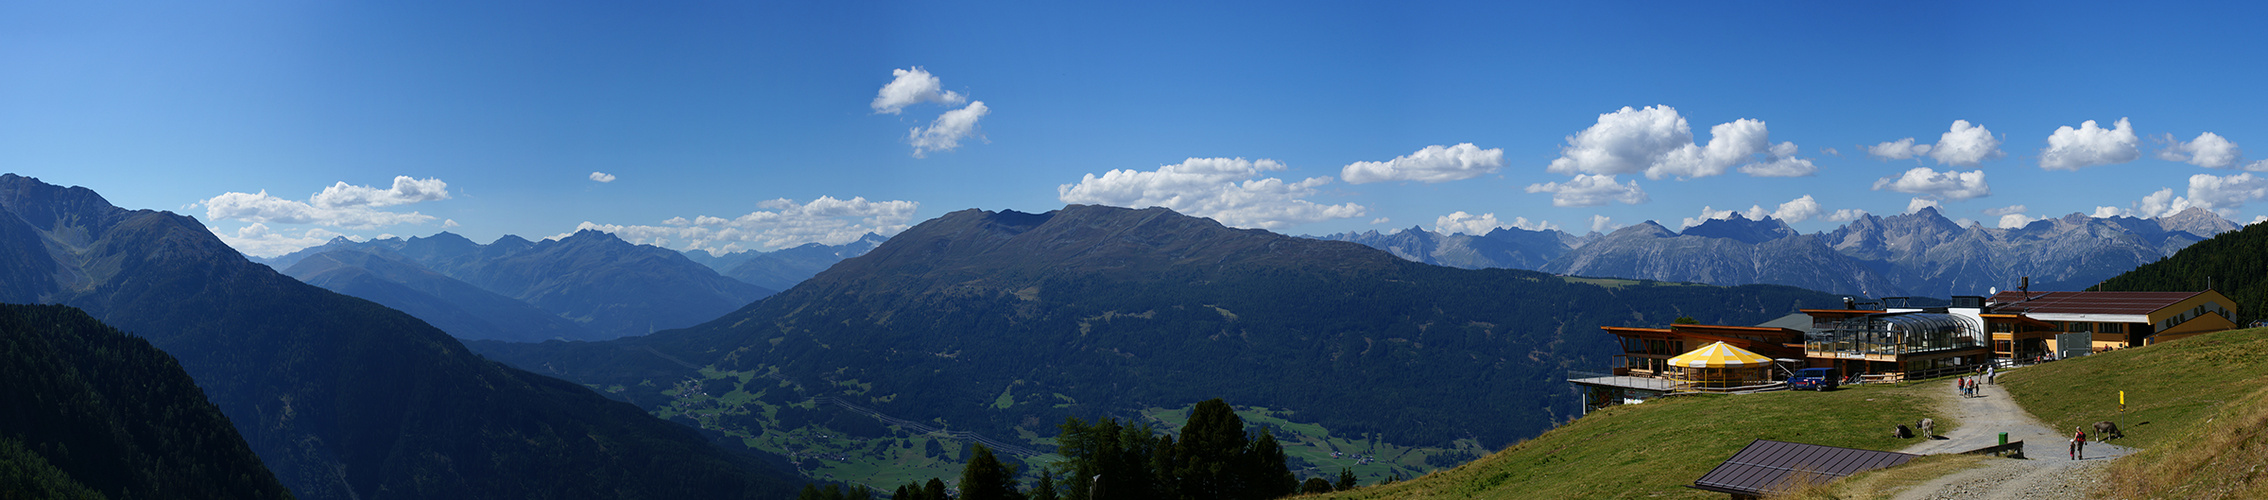 Tirol 2013